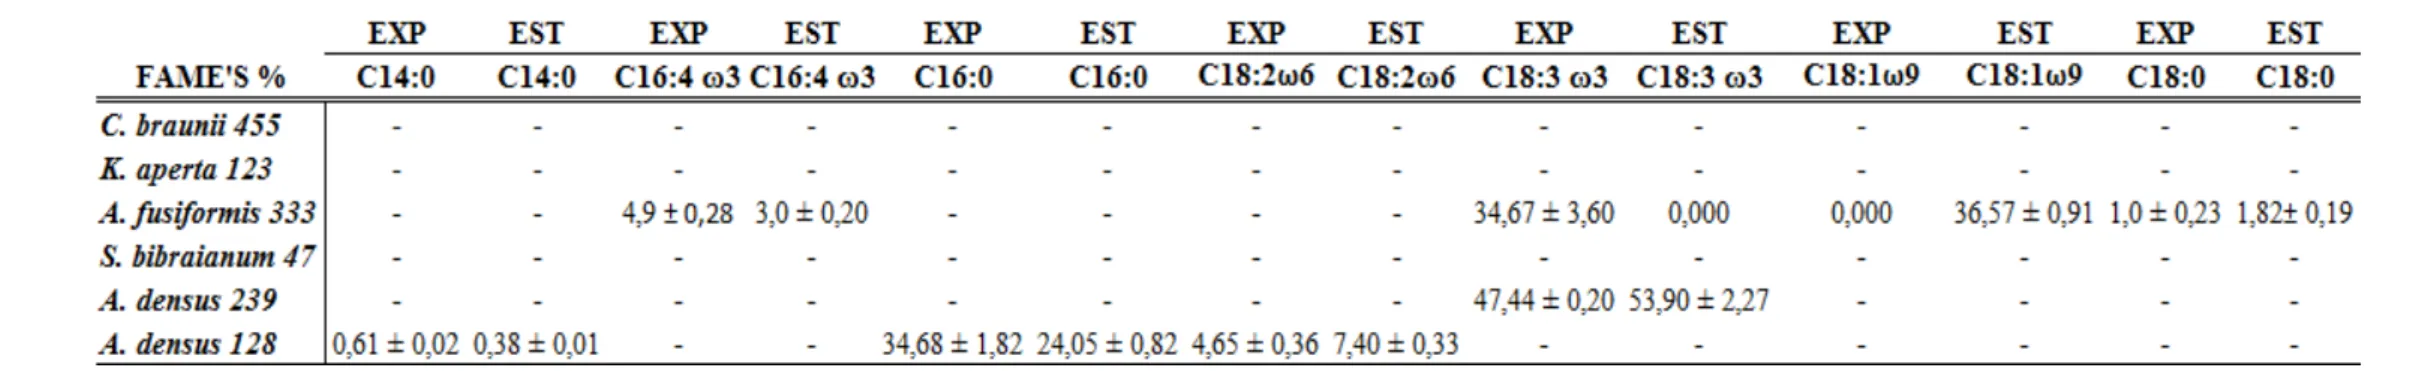 Tabela 2-4: Perfil dos ácidos graxos que apresentaram ou não diferenças significativas de concentração entre as fases de cultivo exponencial e estacionária  de  microalgas  pertencentes  à  família  Selenastraceae  cultivadas  nas  fases:  exponencial  (EX